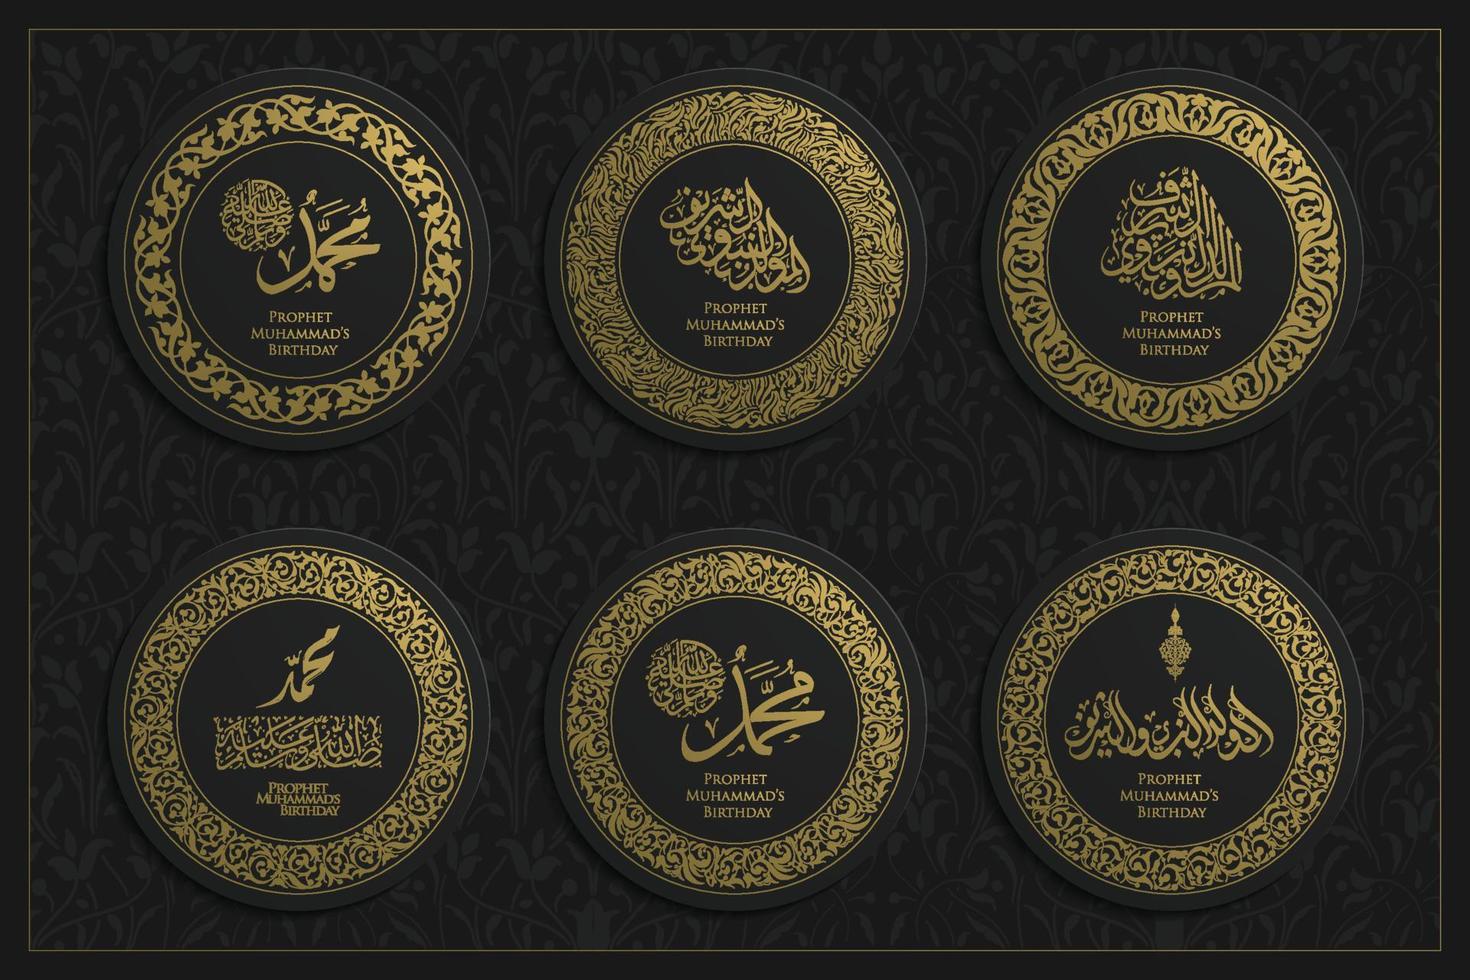 sechs sätze mawlid al-nabi grußhintergrund islamisches blumenmuster vektordesign mit arabischer kalligrafie und moschee für karte, banner, tapete, cover, flyer. der mittelwert ist der geburtstag des propheten muhammad vektor